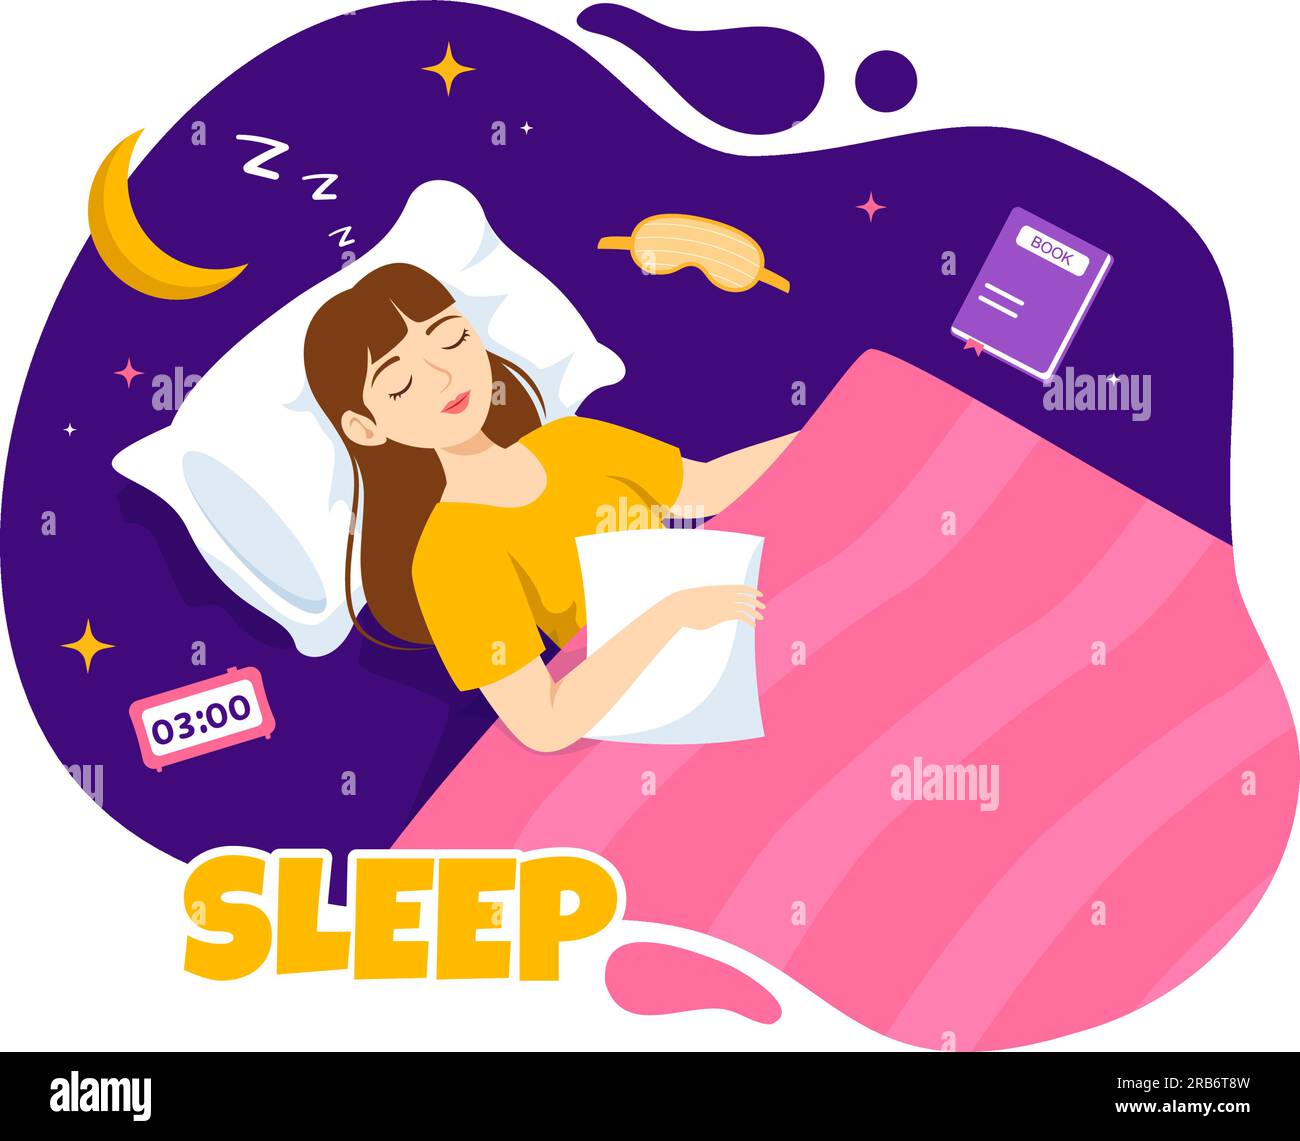 La ilustración del vector del sueño con la persona joven feliz está dormida rápidamente y teniendo un sueño dulce en plantillas de la noche del fondo dibujado a mano de la atención sanitaria Ilustración del Vector